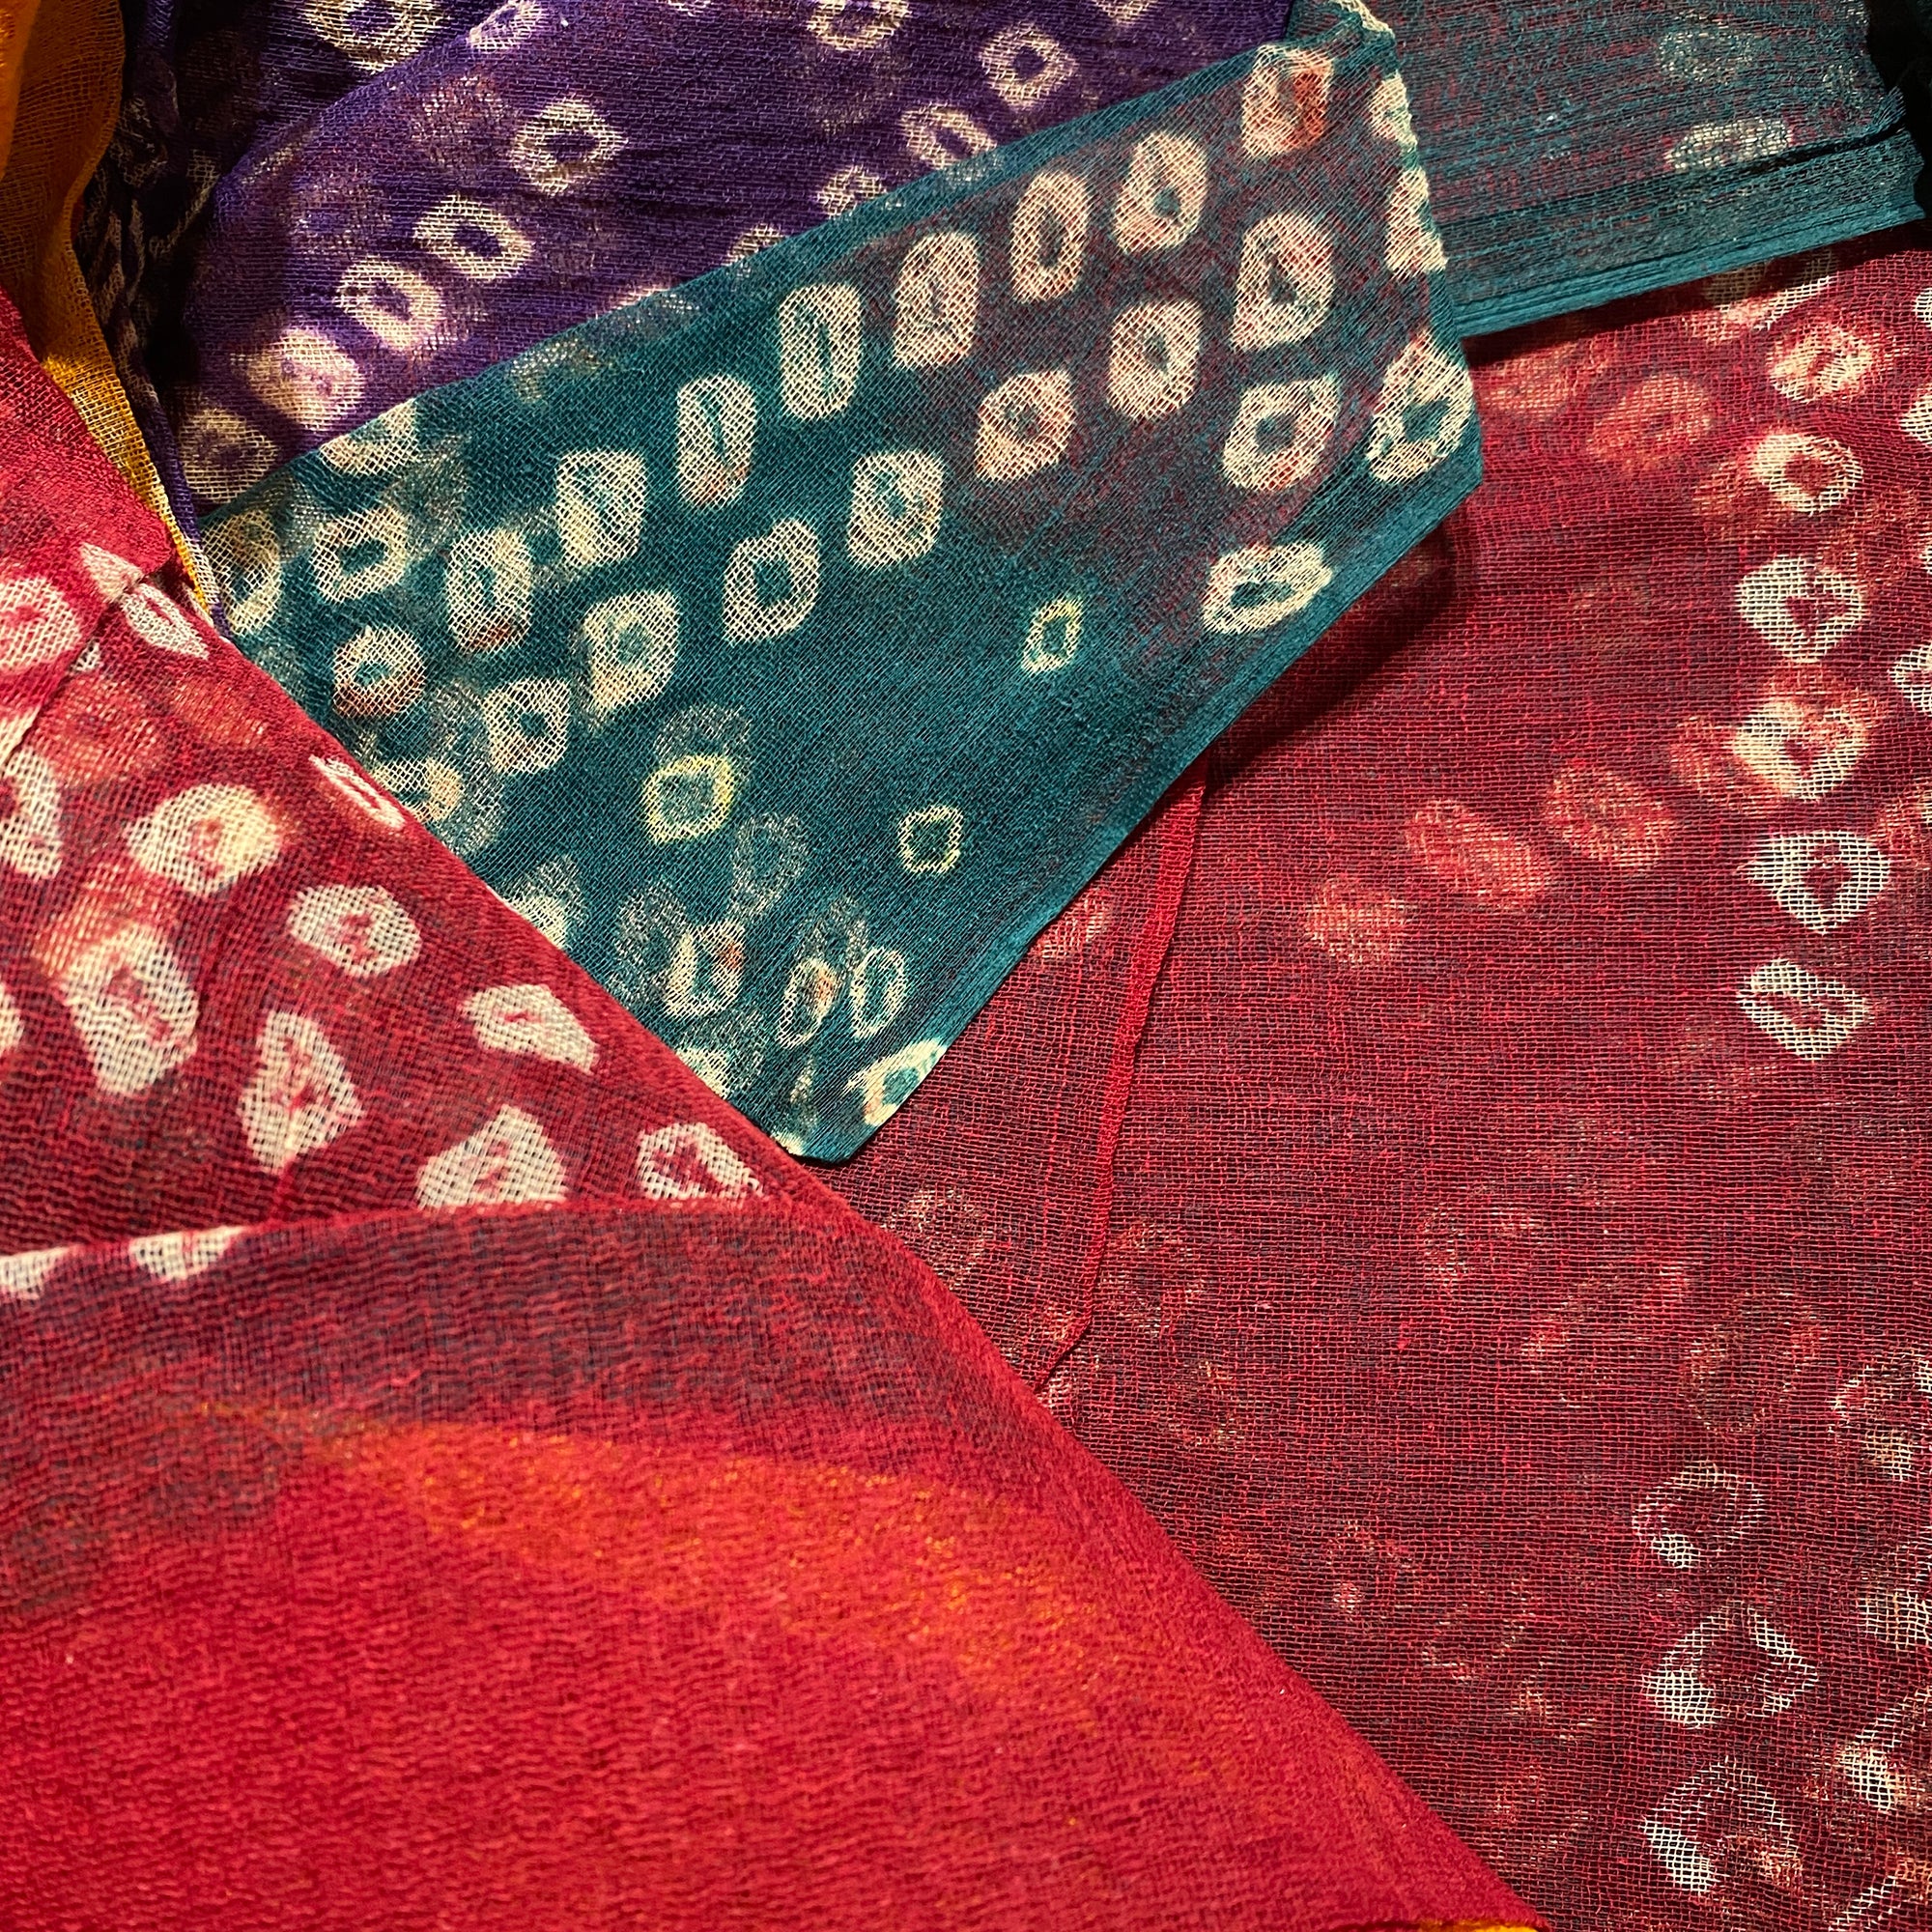 Rajasthani Safa Fabrics - Vintage India NYC